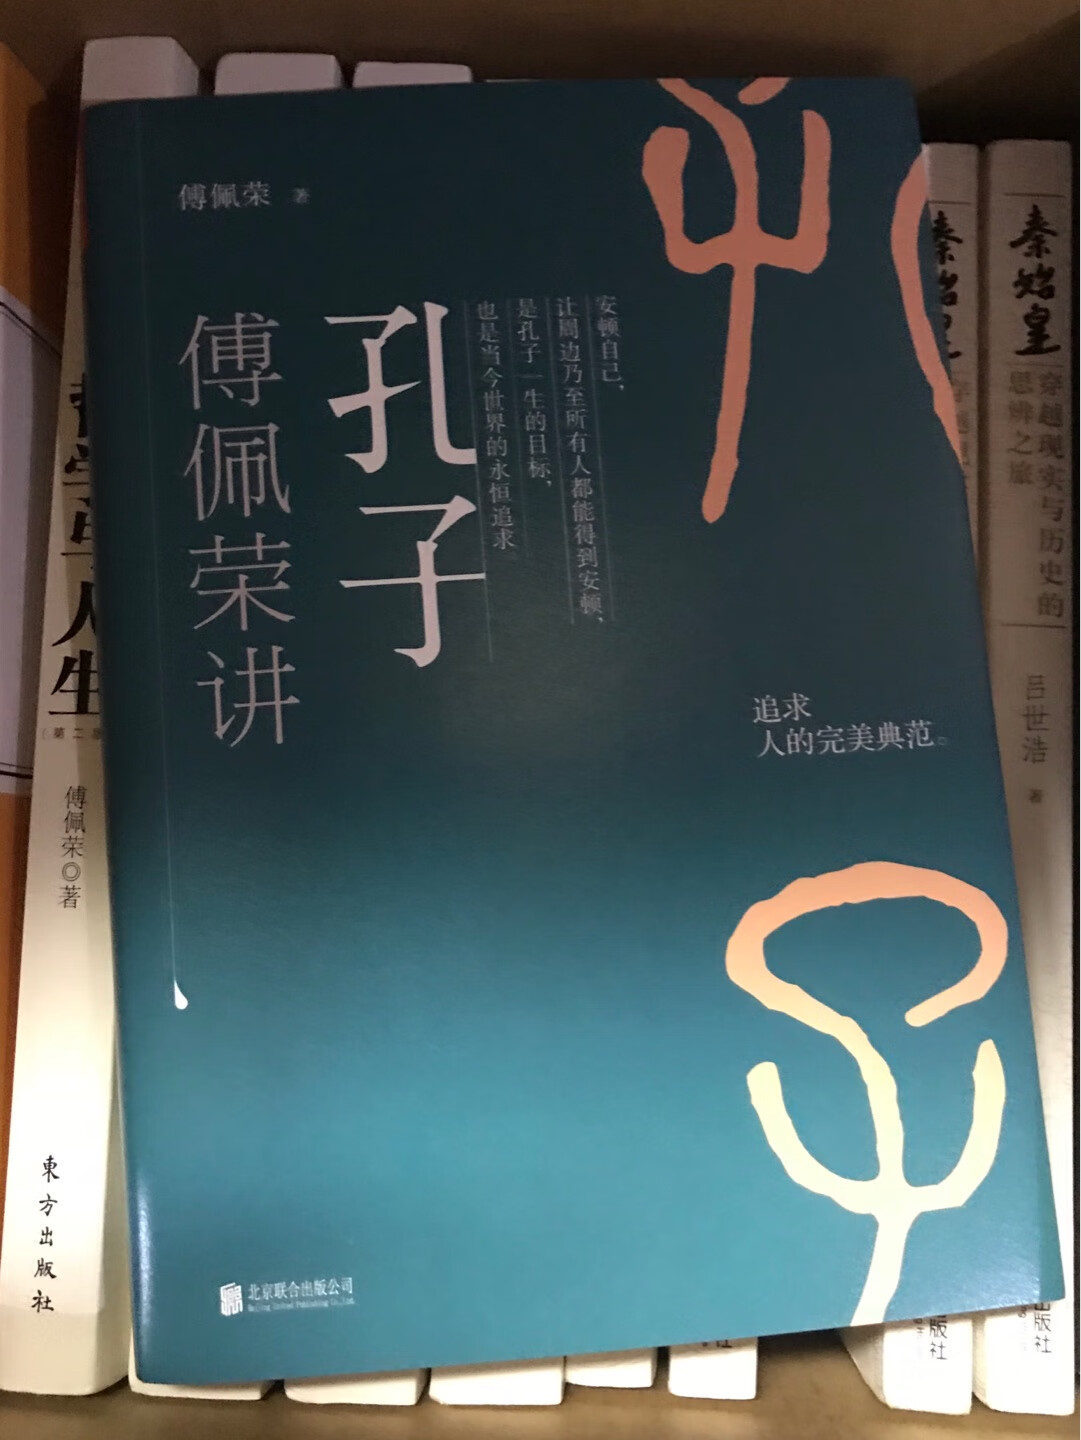 国学经典，儒学好书，最重要该是国学大咖傅佩荣老师的作品，非常值得。